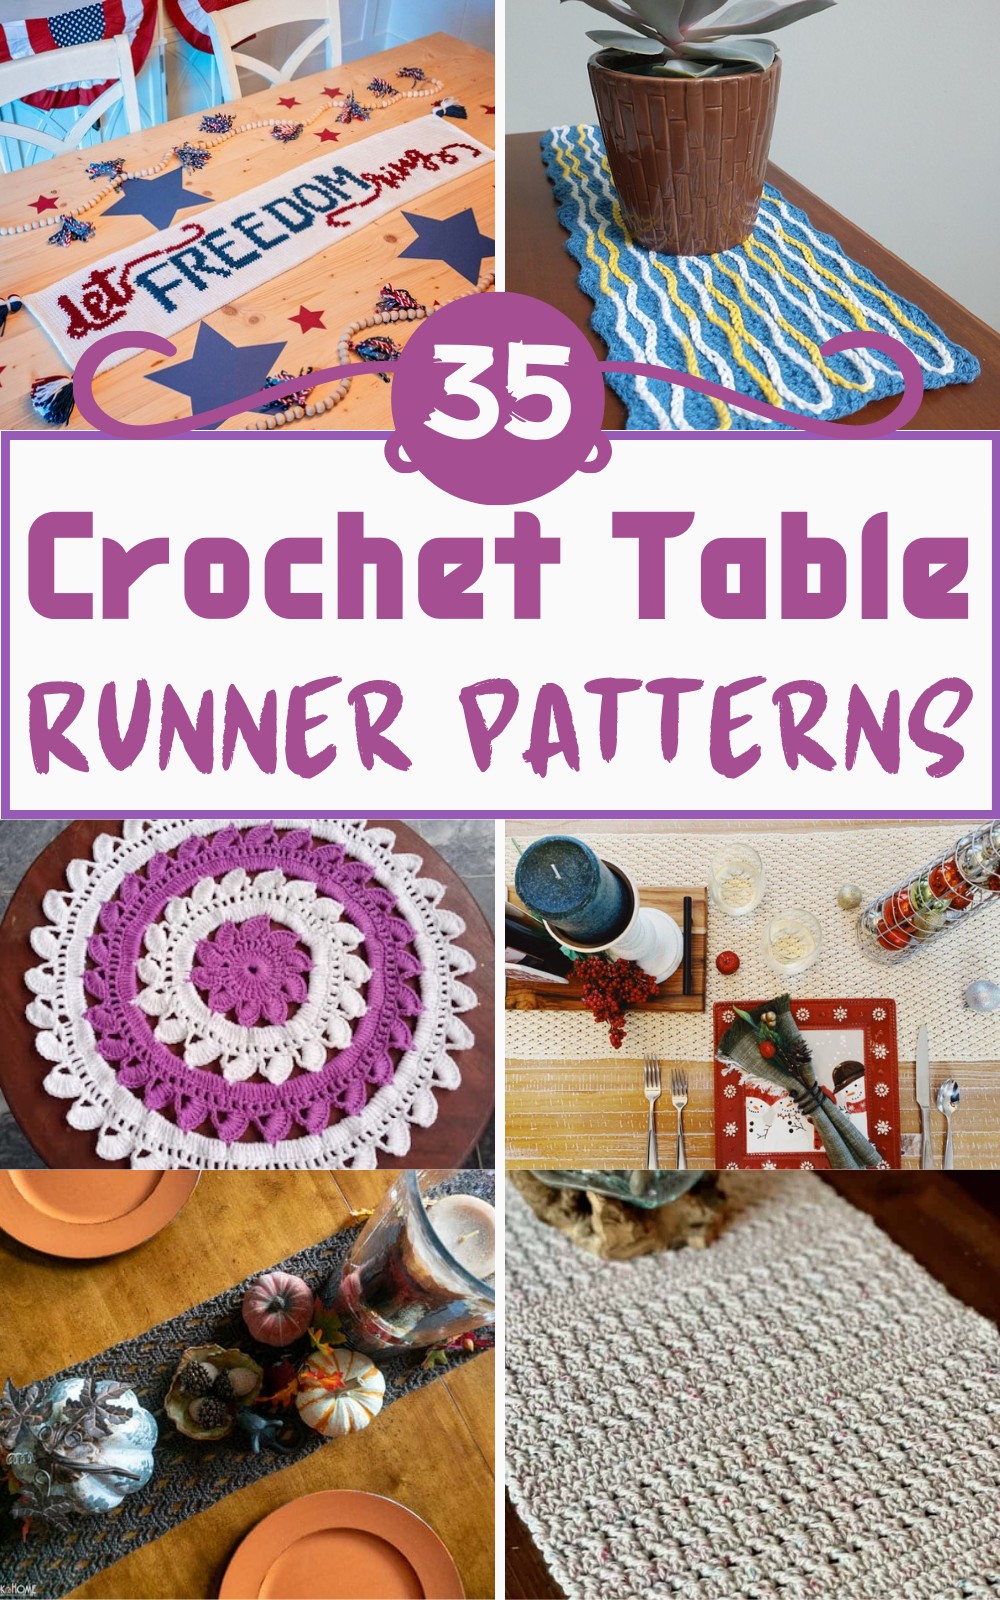 Free Crochet Table Runner Patterns